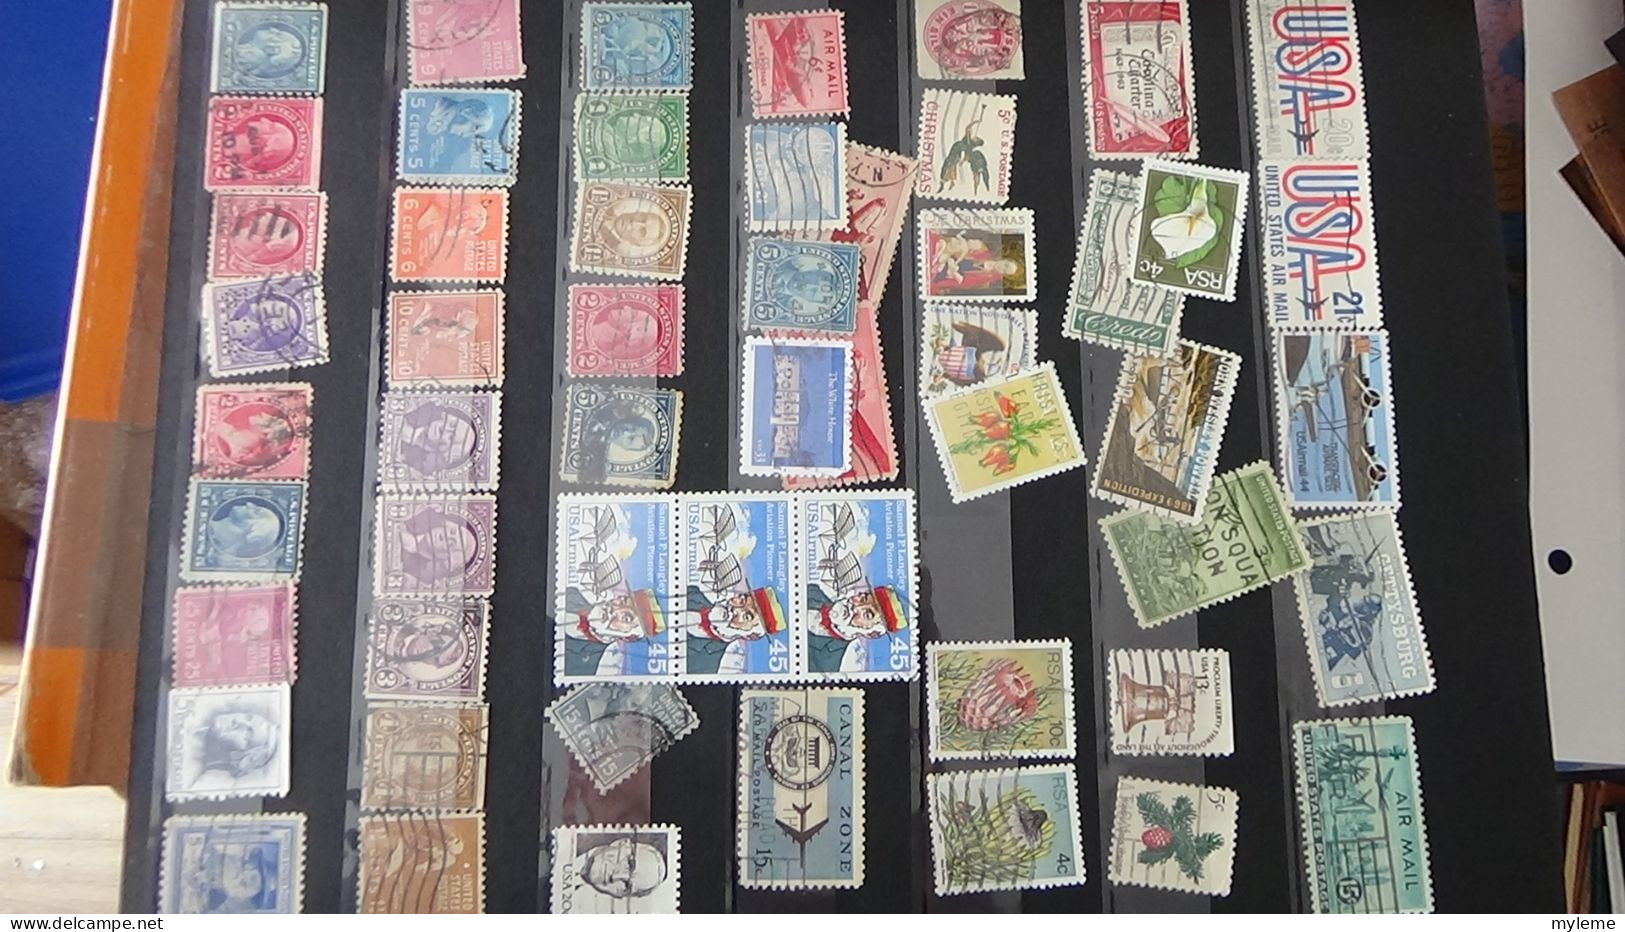 BF17 Ensemble de timbres et blocs oblitérés de divers pays + plaquette de timbres ** de la libération. Cote sympa !!!.